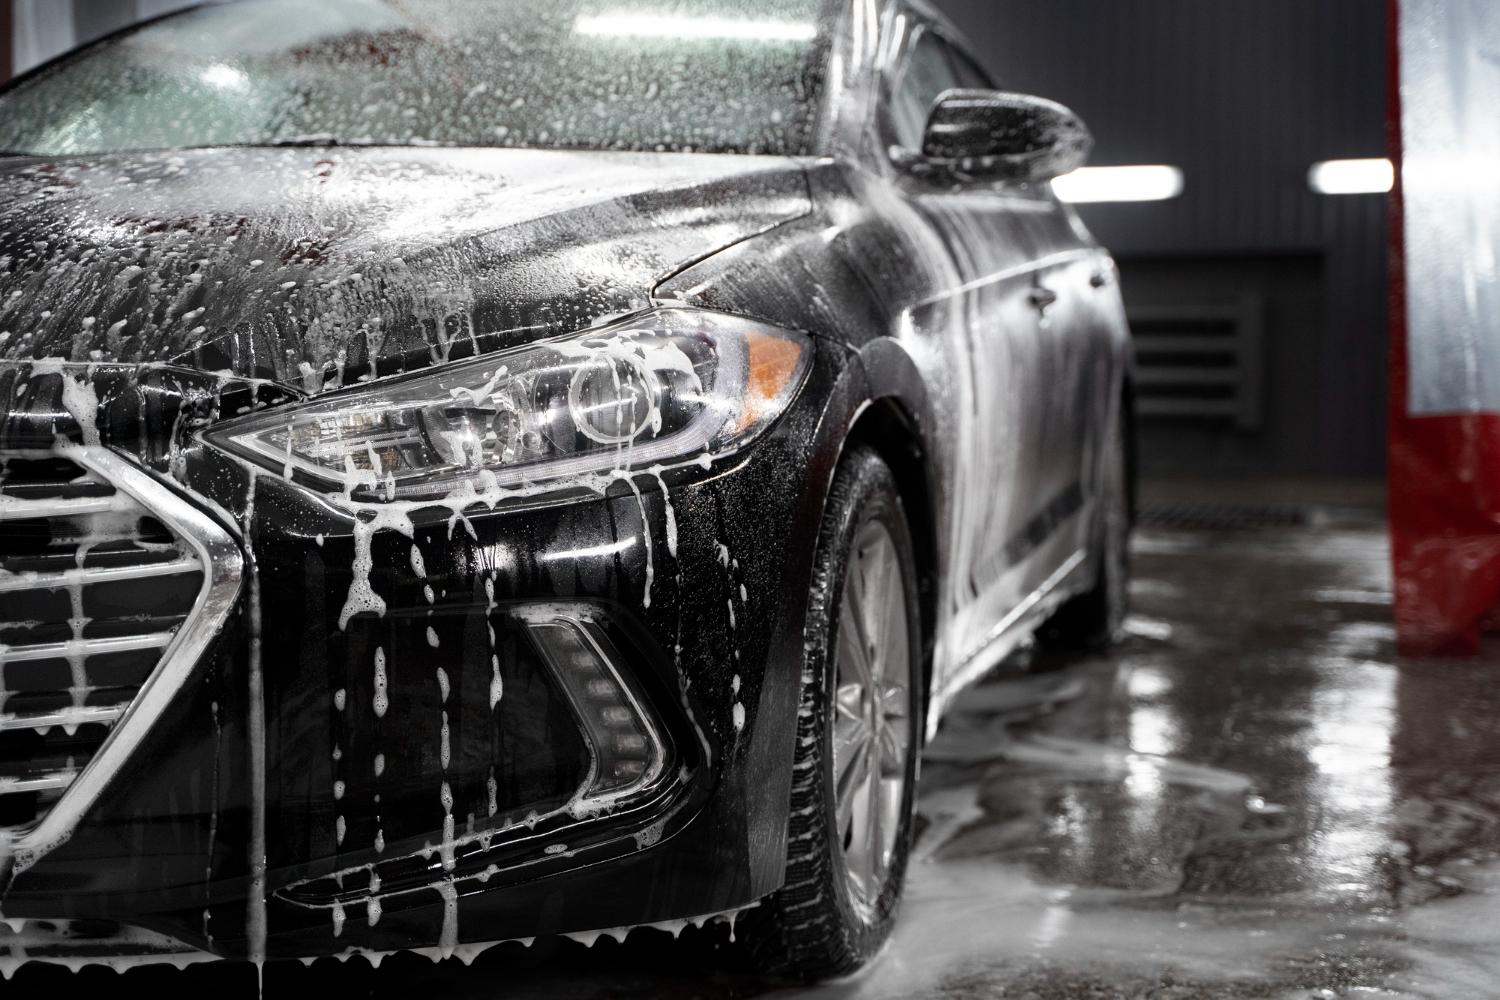 Bienvenido a Monevolve Car Wash, ¡donde cada detalle brilla!